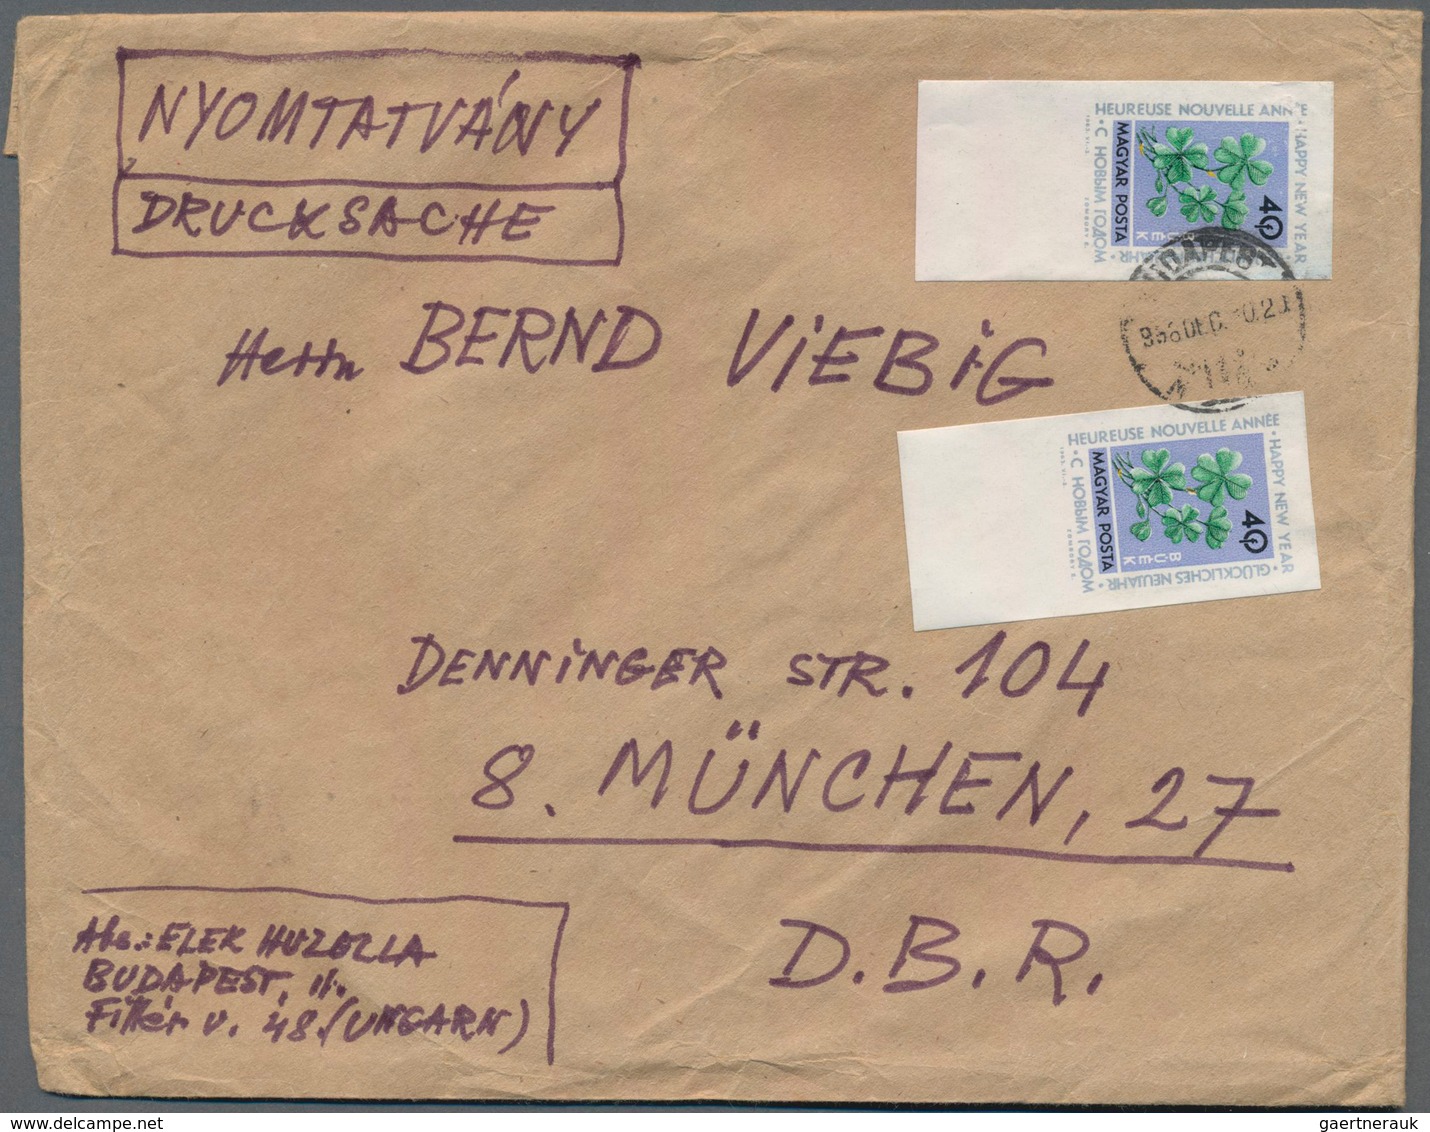 Alle Welt: 1880-1960, bunter Posten mit geschätzt 1.000 Briefen und Ganzsachen, viel europäische Län